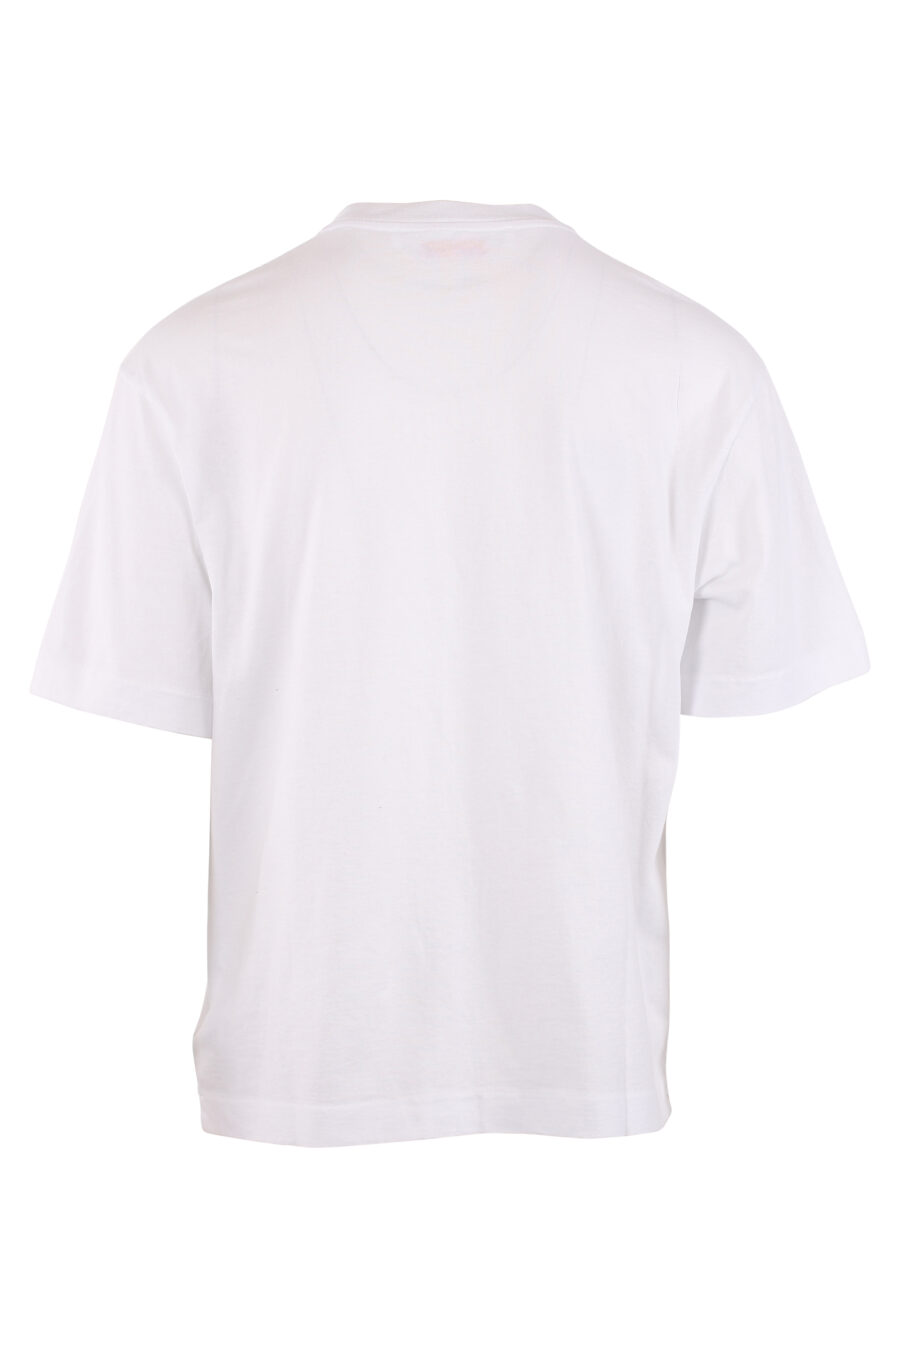 T-shirt branca de tamanho grande "Spray" - IMG 1511